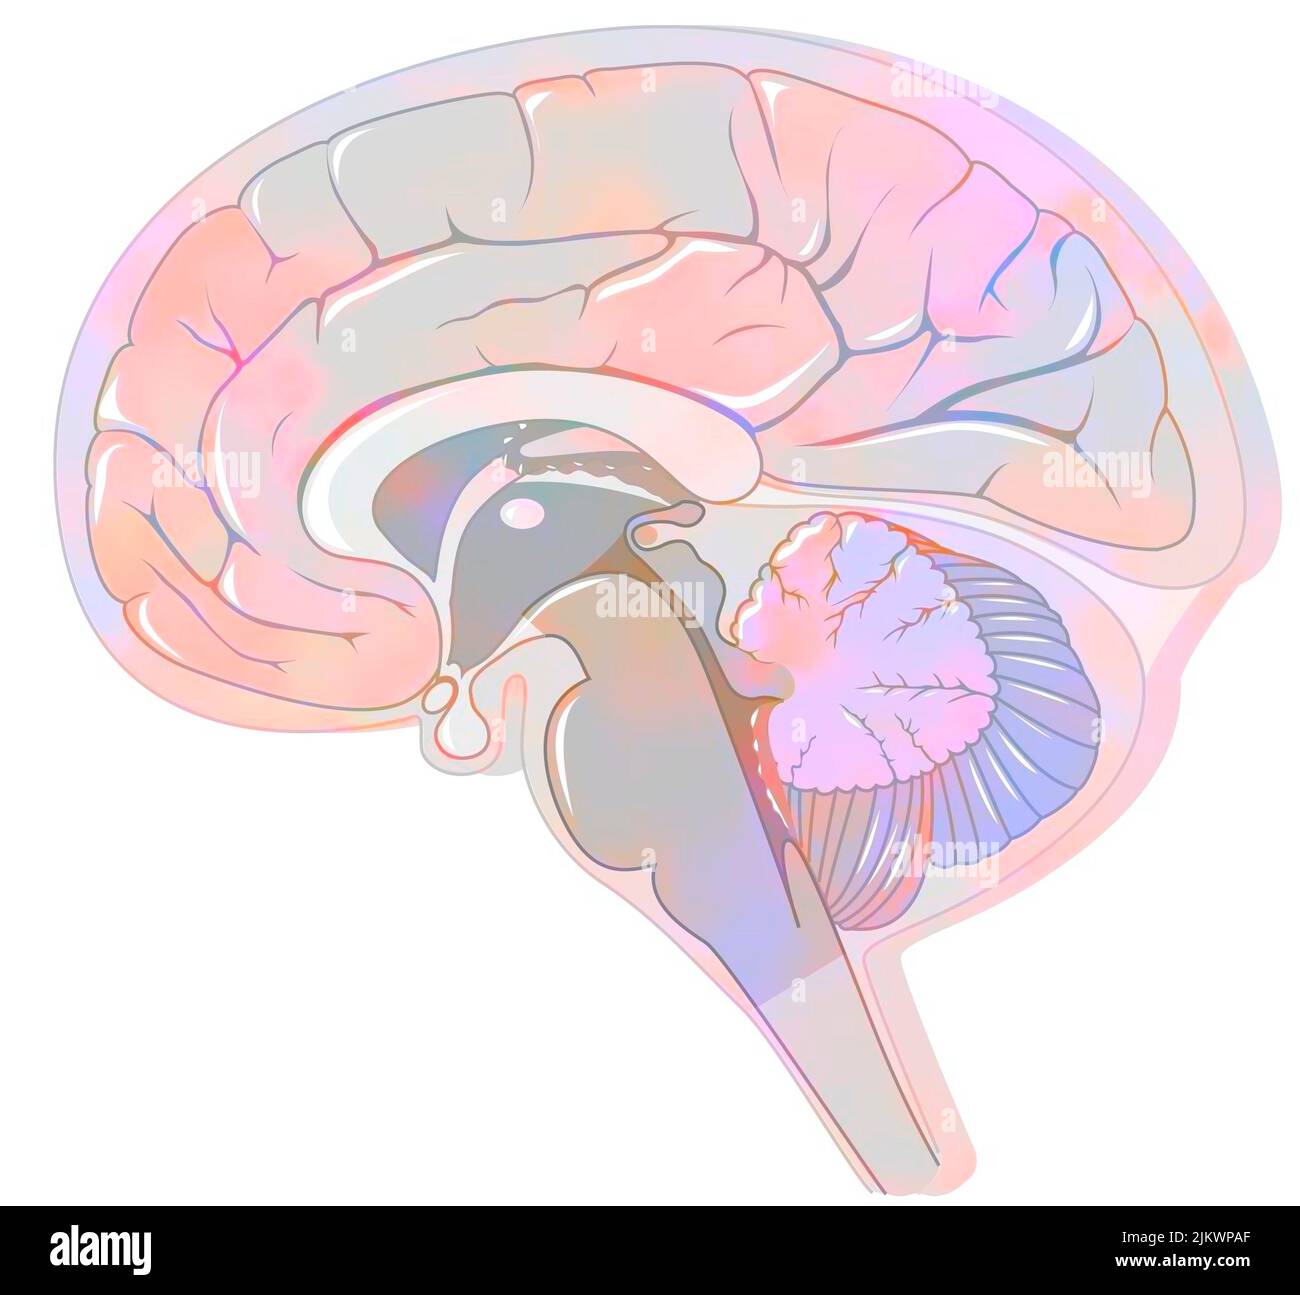 Sezione sagittale del cervello con meningi e liquido cerebrospinale. Foto Stock